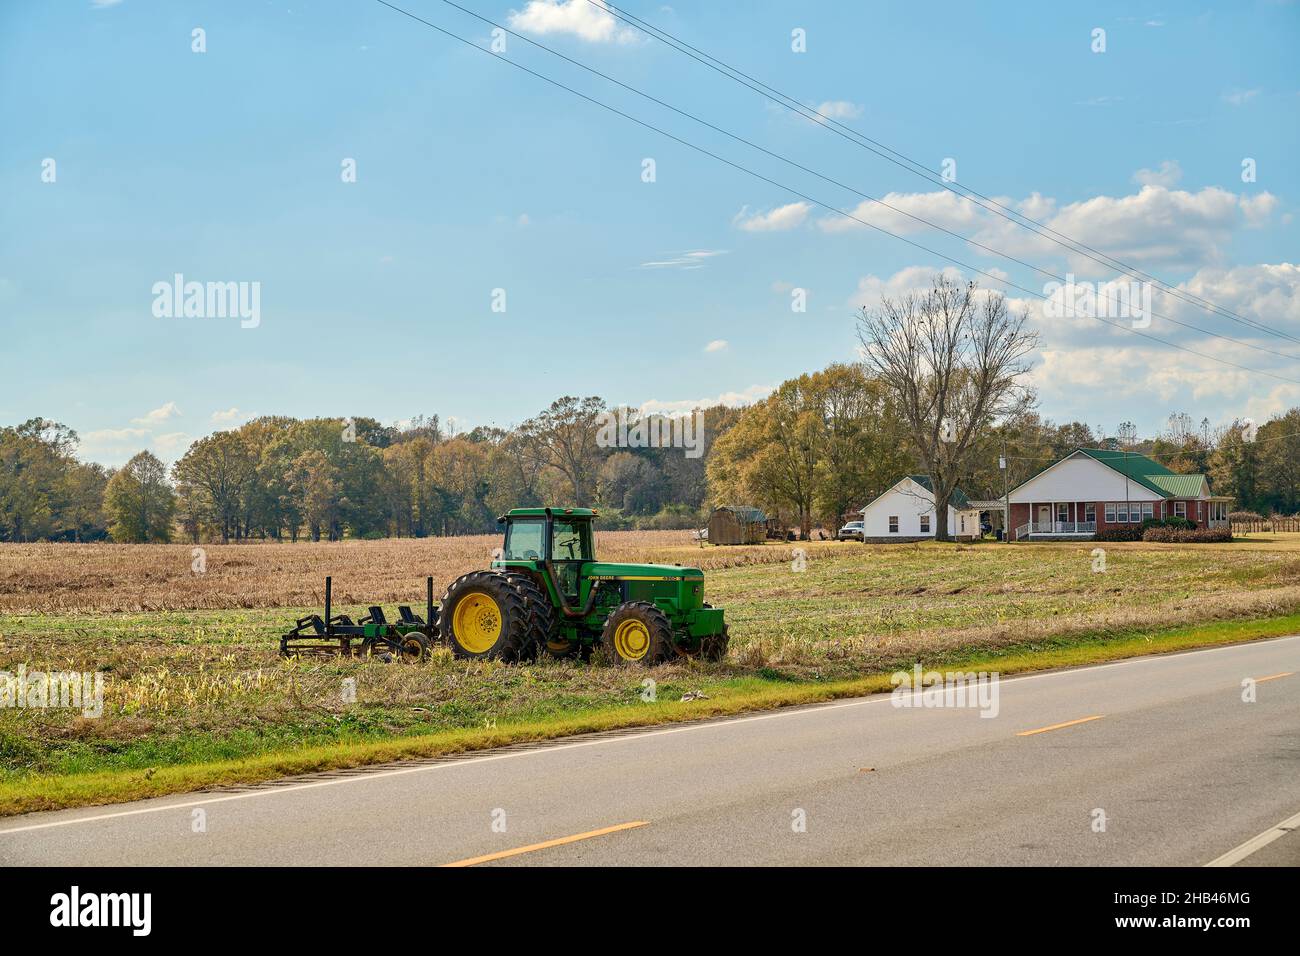 Kleine amerikanische Familienfarm mit einem John Deere Traktor und einer Deichsel mit dem Farmhaus im Hintergrund im ländlichen Alabama, USA. Stockfoto